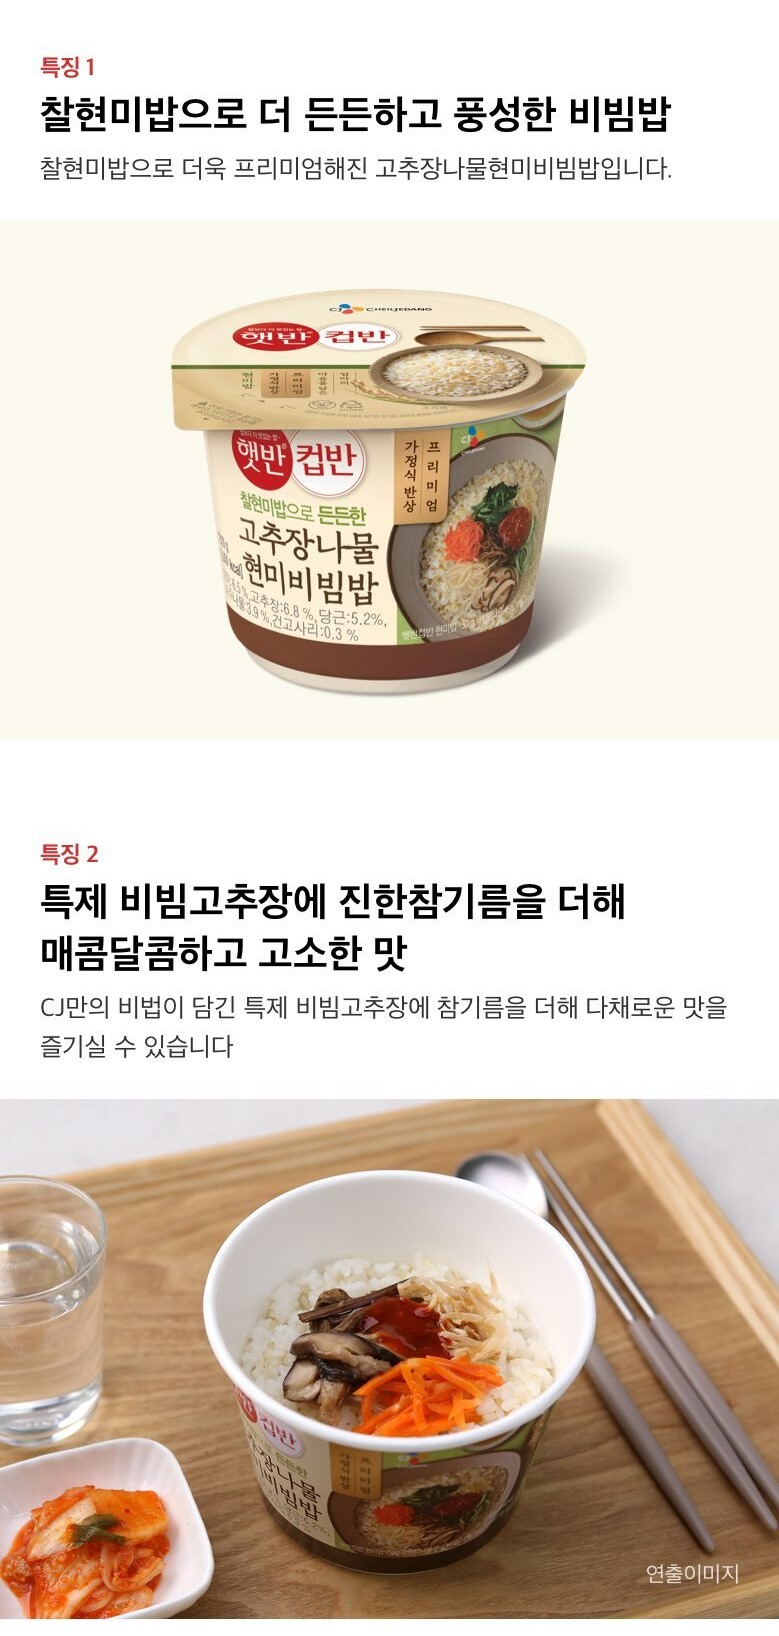 韓國食品-[CJ] Cup Rice (Brown Rice Bibimbap with Vegetable and Red Pepper Paste) 229g